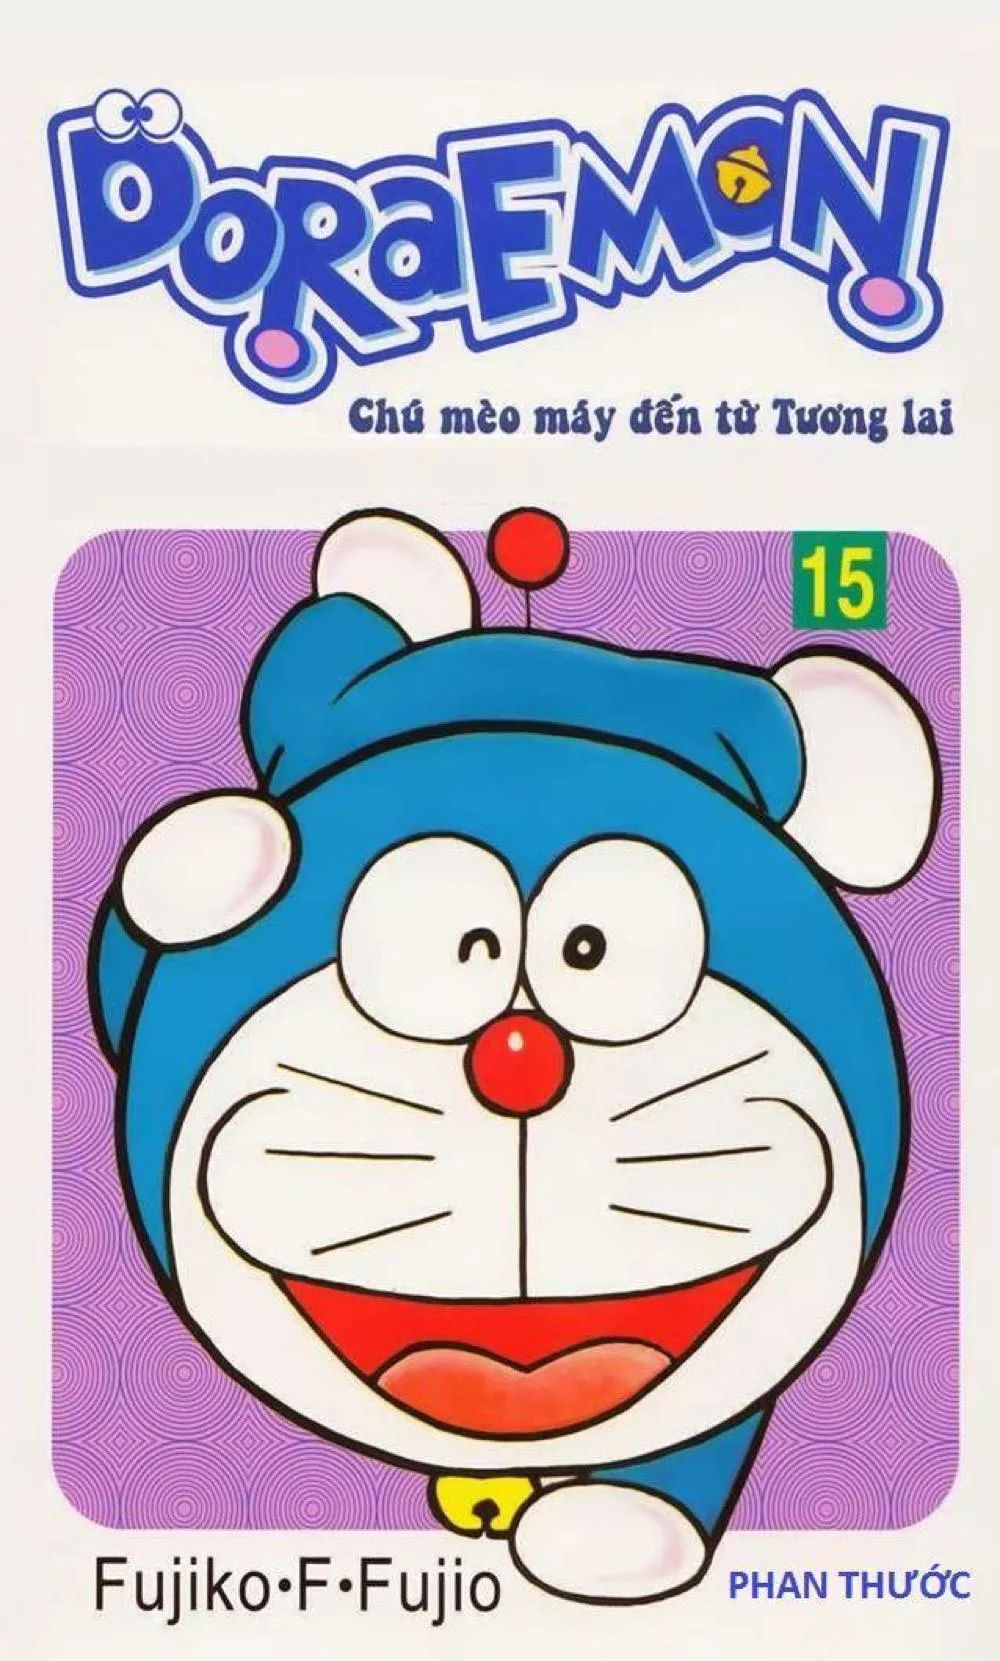 Nếu bạn đam mê hoạt hình Doraemon, tập 15 của chúng ta sẽ giúp bạn có một trải nghiệm tuyệt vời! Tập sách vẽ đầy màu sắc này sẽ đưa bạn vào một chuyến phiêu lưu kỳ thú trong thế giới Doraemon huyền diệu. Hãy đến và thưởng thức những trang sách tuyệt vời này!